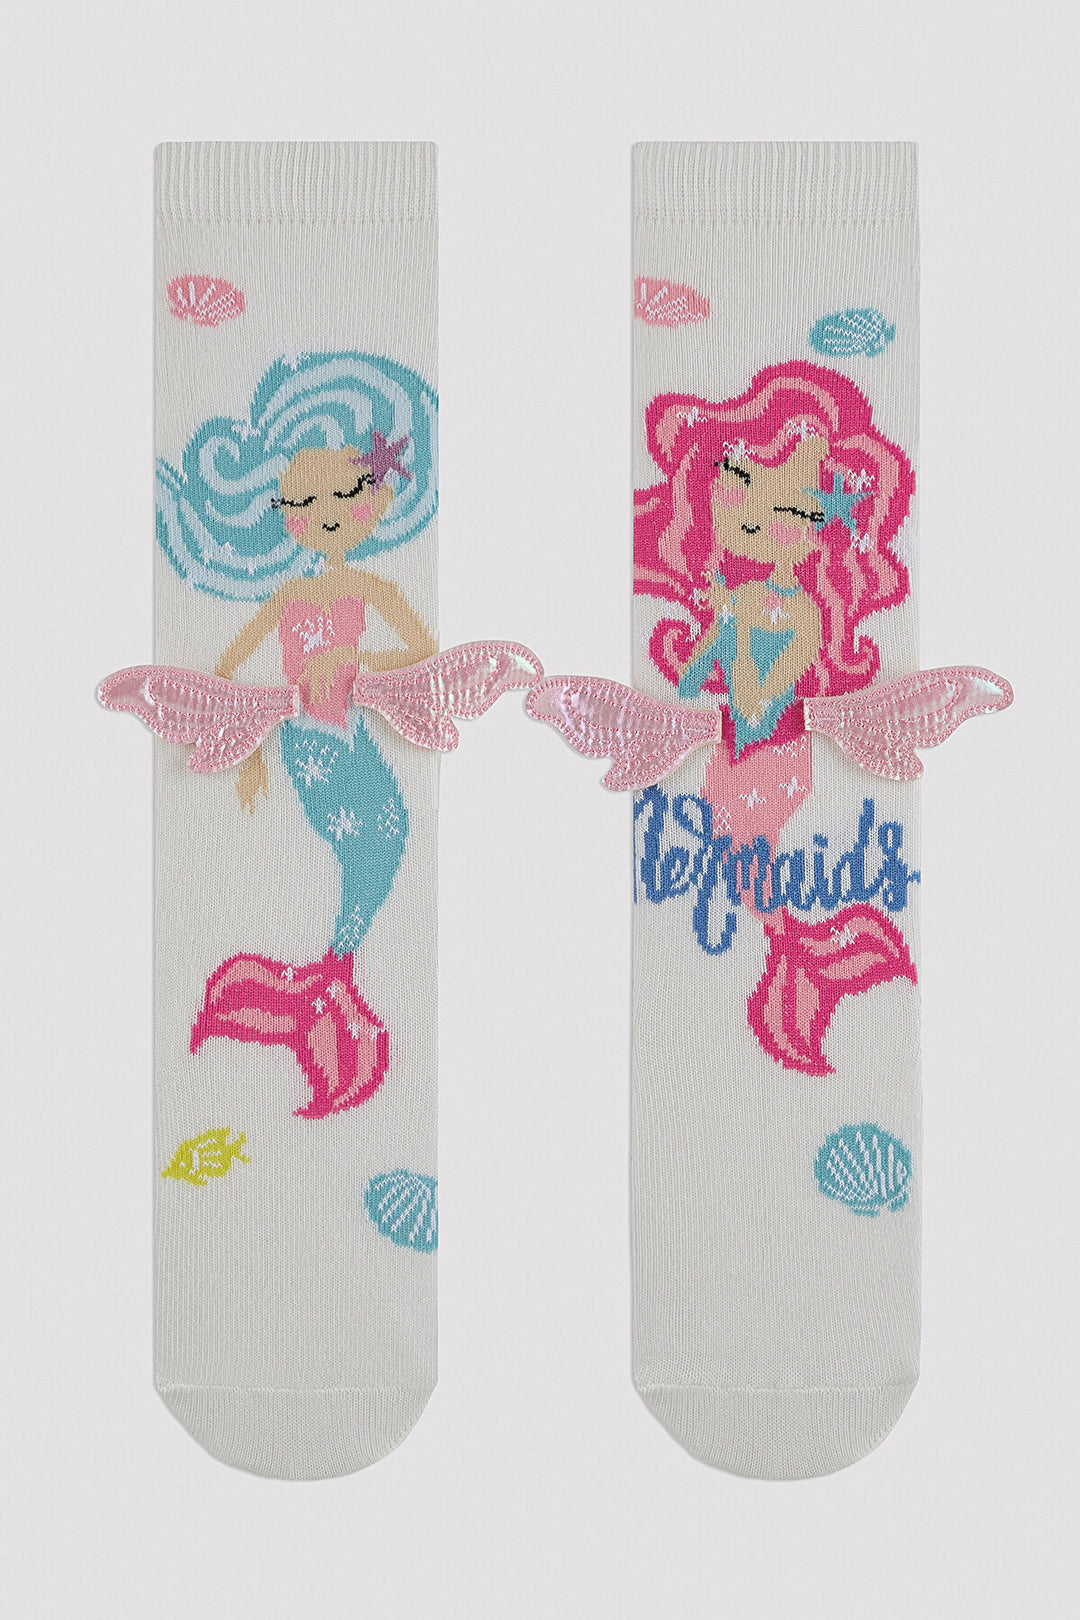 Girl Wings Mermaid Sock